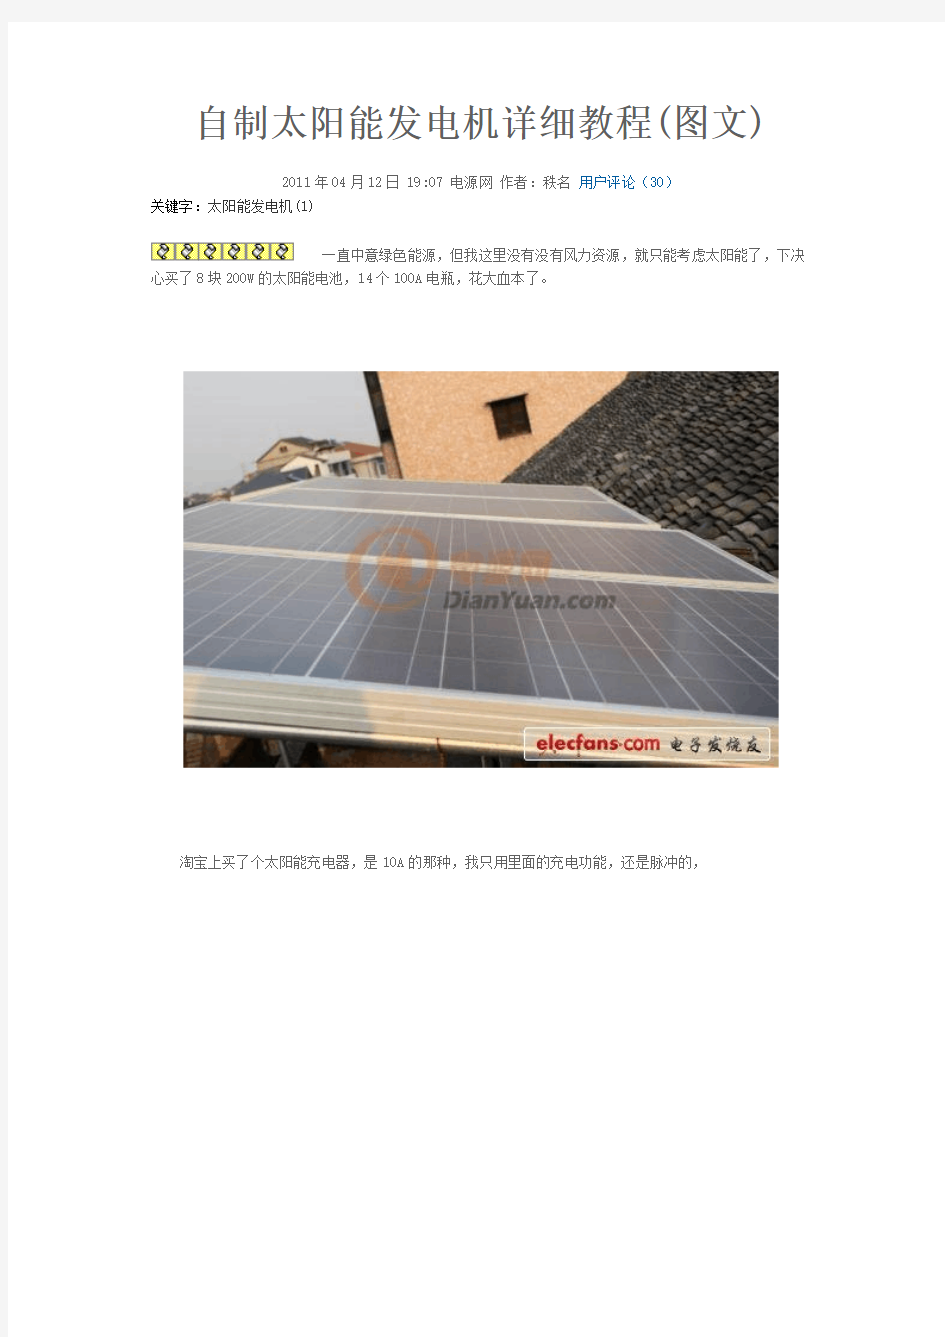 自制太阳能发电机详细教程